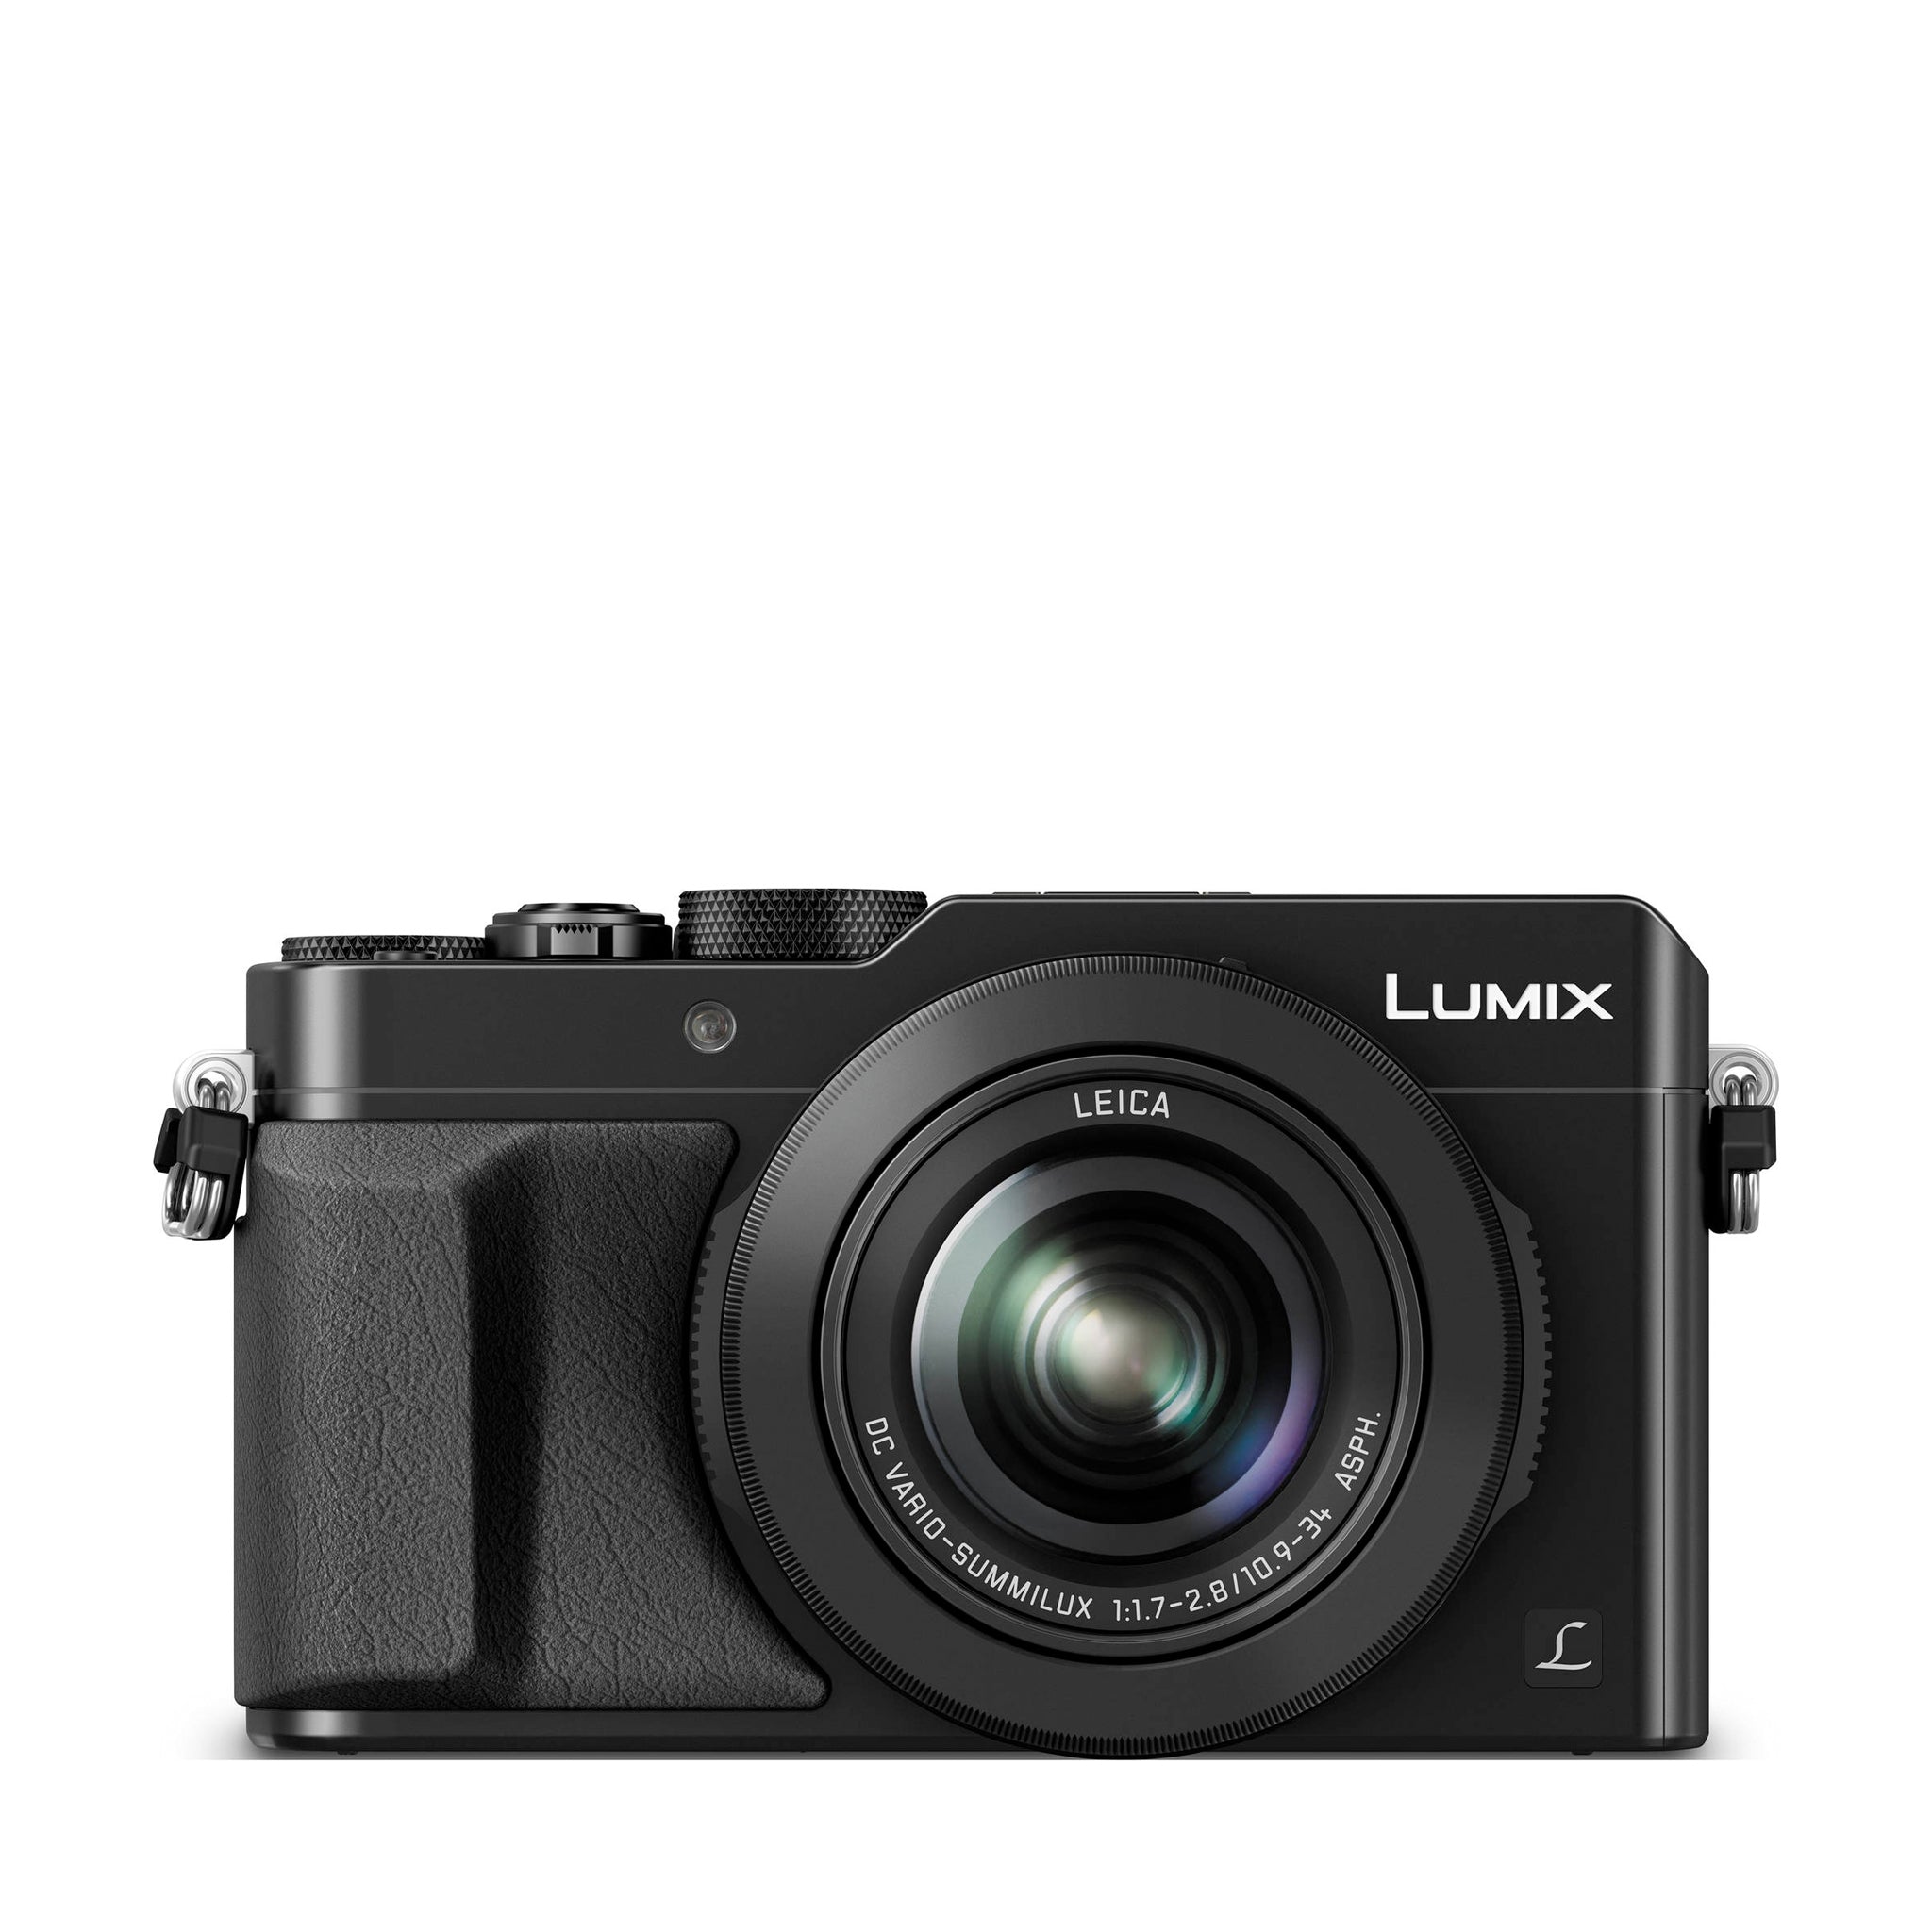 LX100 Digital Camera + 24-75mm F1.7-2.8 Lens